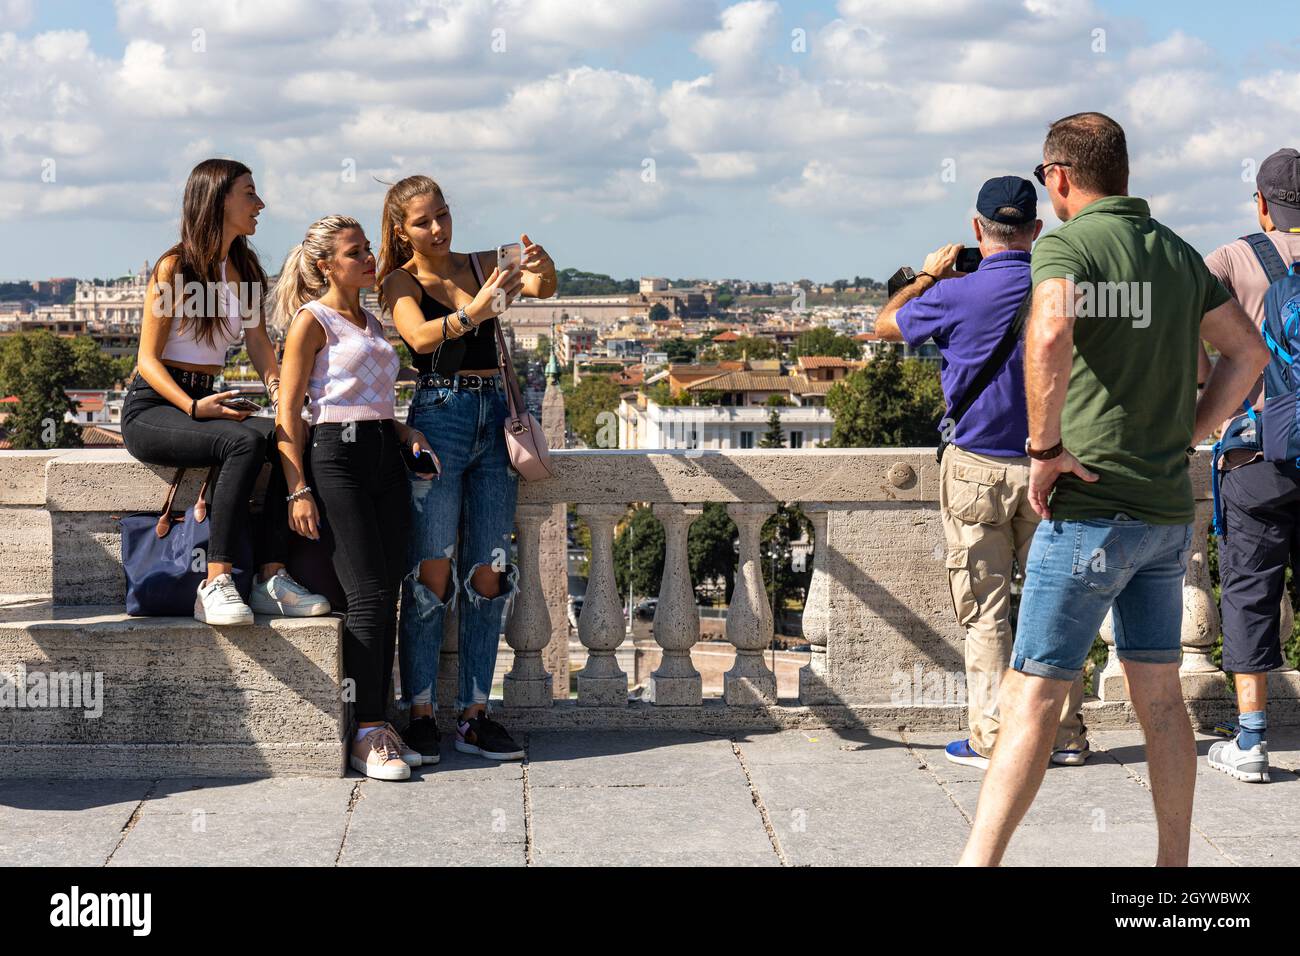 Junge Frauen oder Mädchen im Teenageralter, die ein Gruppen-Selfie auf Terrazza del Pincio in Rom, Italien, machen Stockfoto